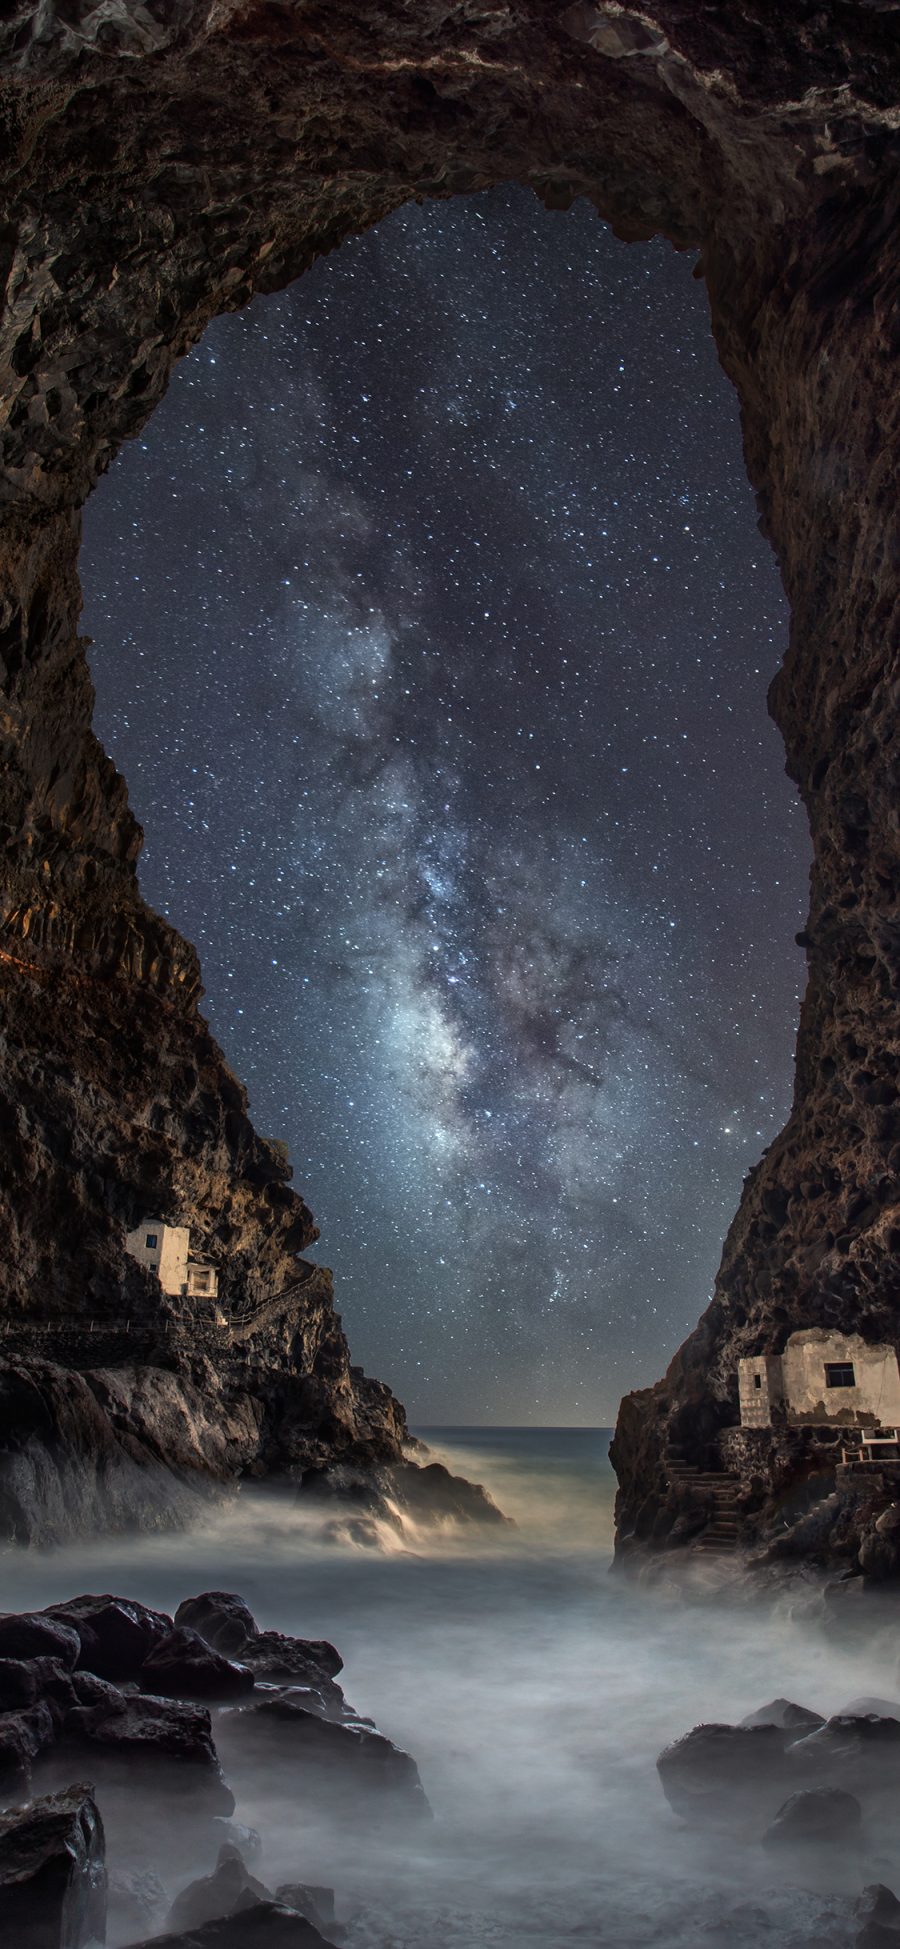 [2436×1125]夜景 星空 洞穴 大海 岩石 苹果手机壁纸图片